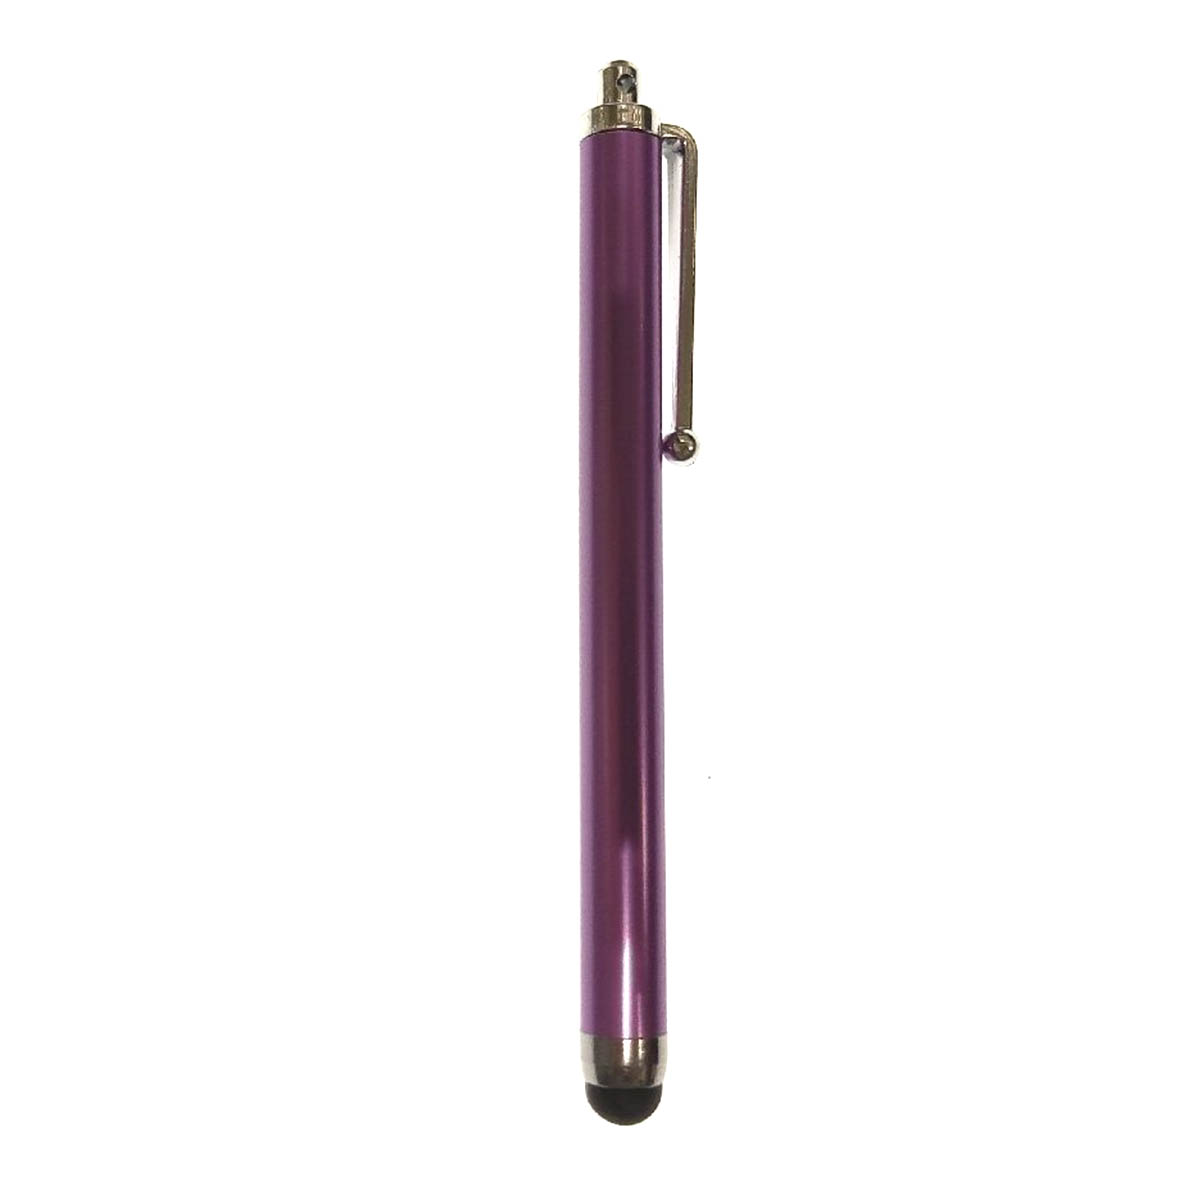 Стилус емкостной для смартфонов и планшетных ПК, длина 11 см, цвет фиолетовый